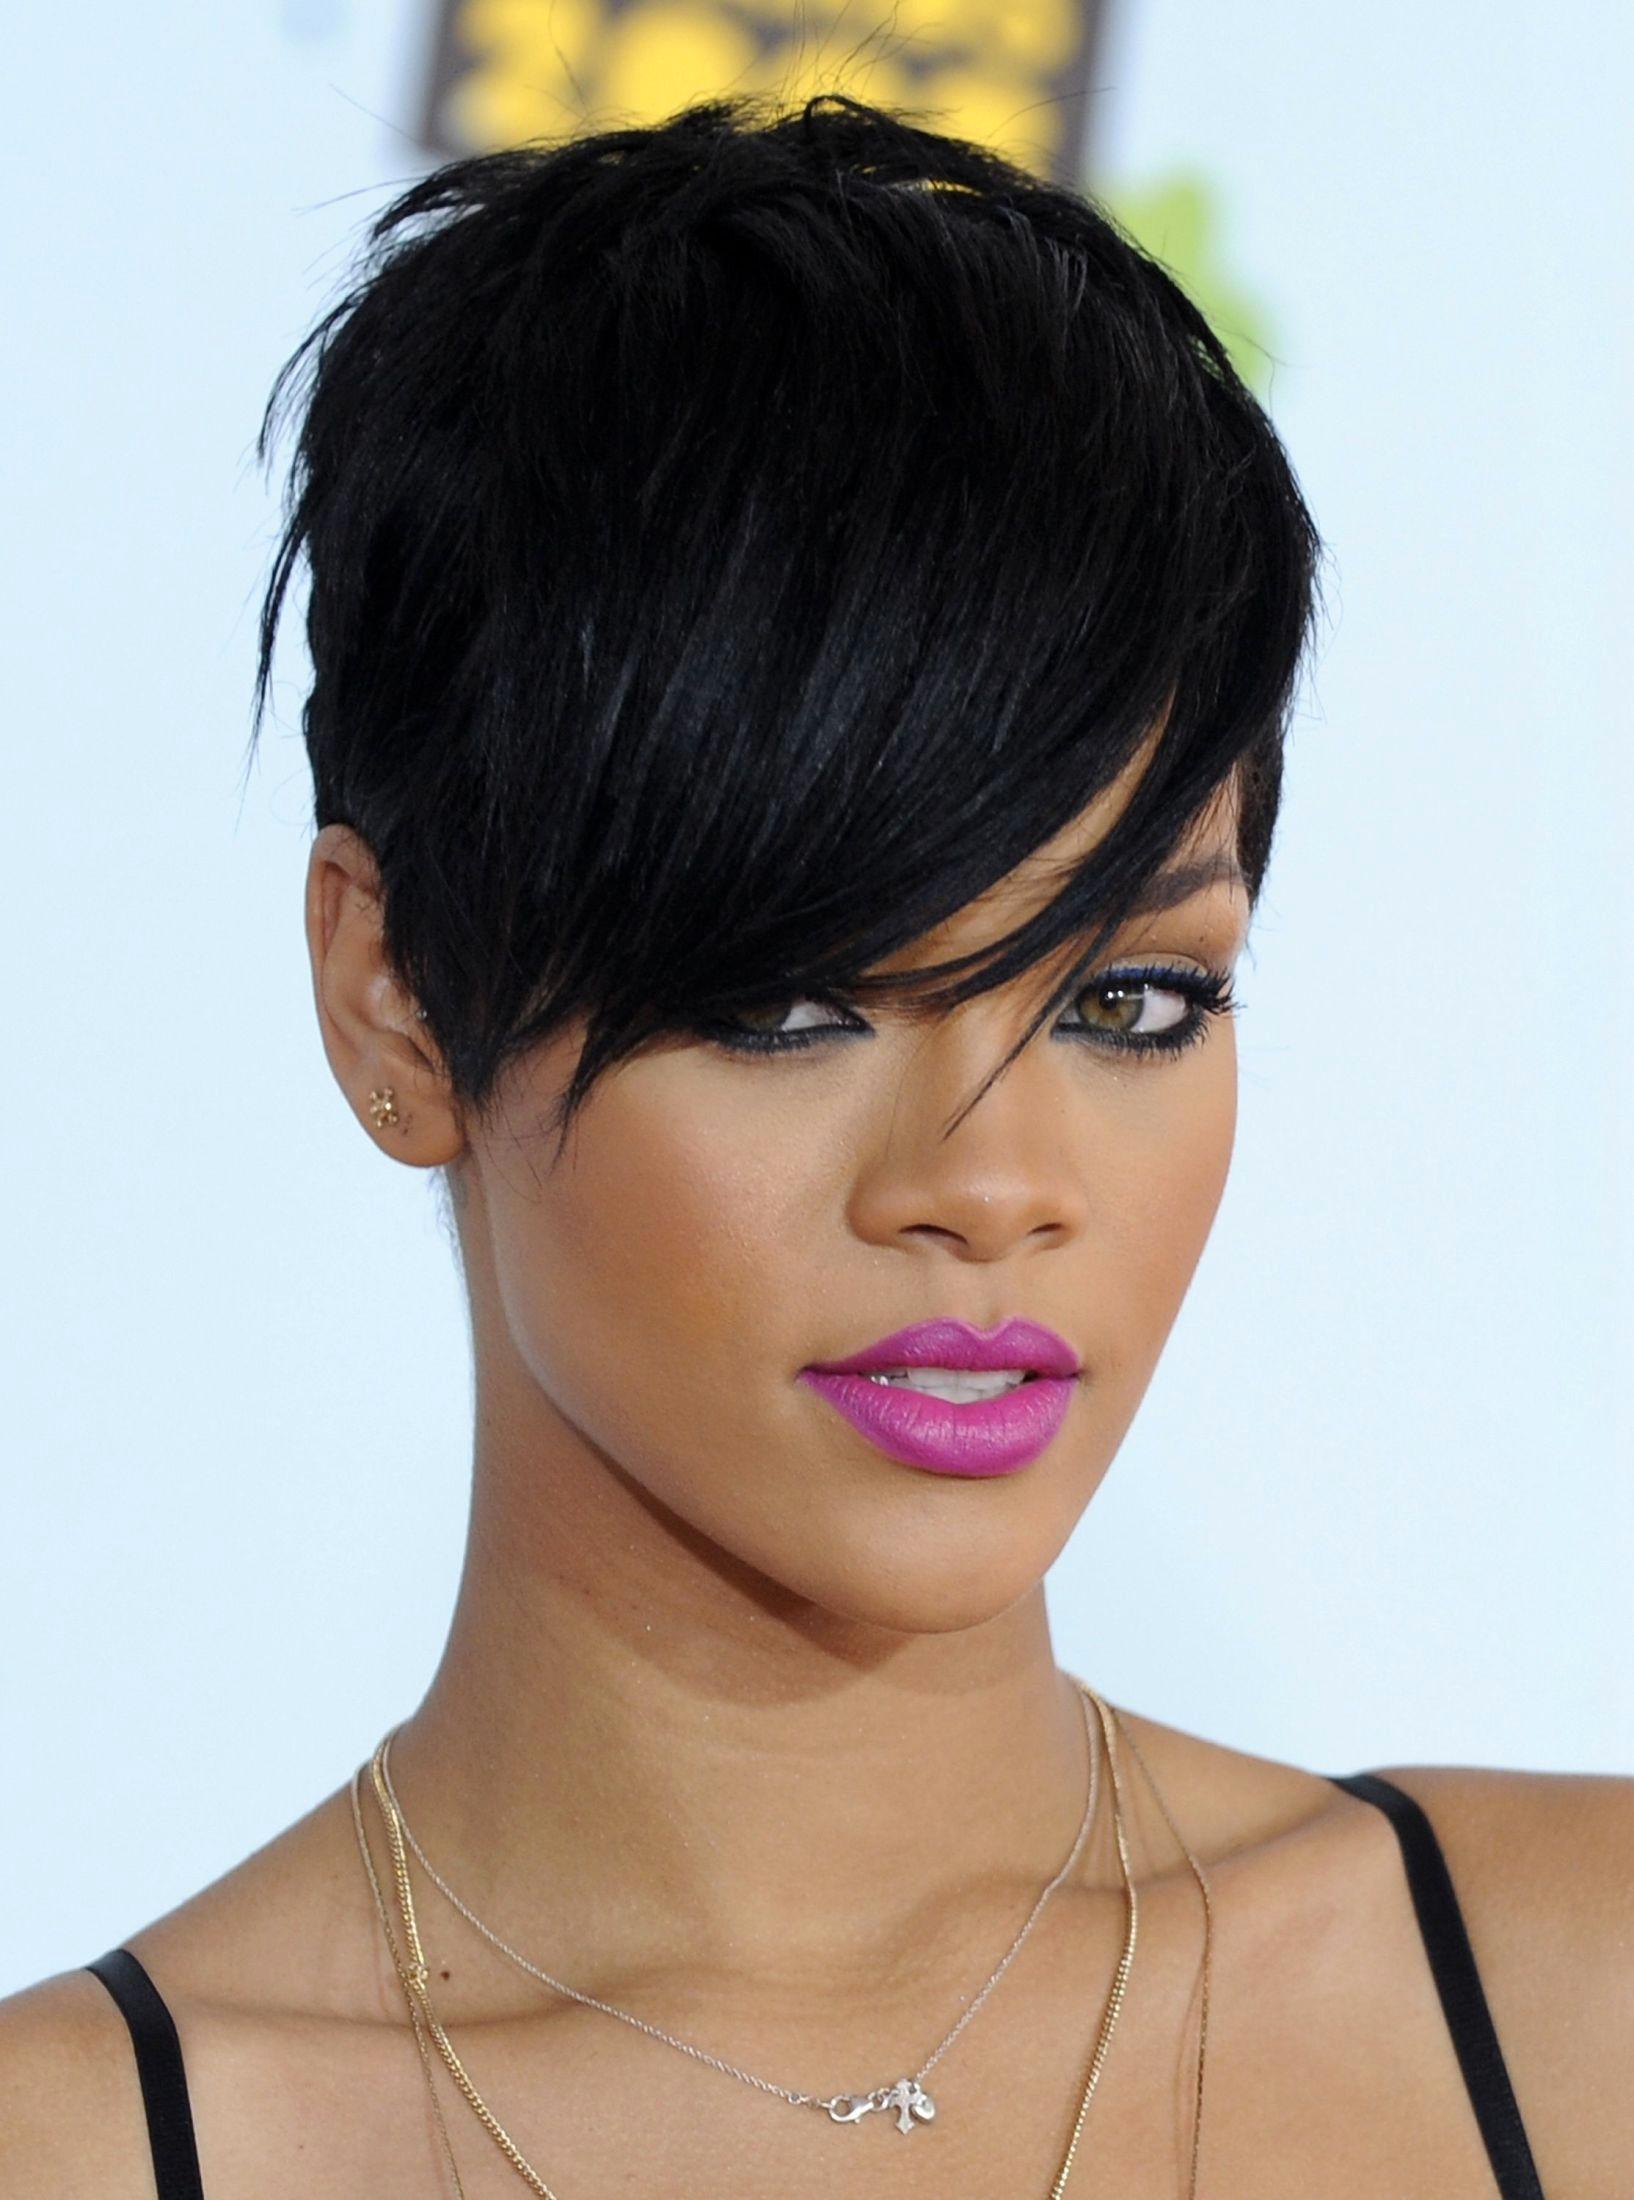 RØFF: Rihannas nye, skarpe look fører til at kvinner verden over klipper håret kortere. Sminken er også hardere og mer fargerik enn vi er vant til å se artisten med. På denne tiden er hun kjæreste med Chris Brown som senere blir arrestert for mishandling. Foto: Chris Pizzello/AP.